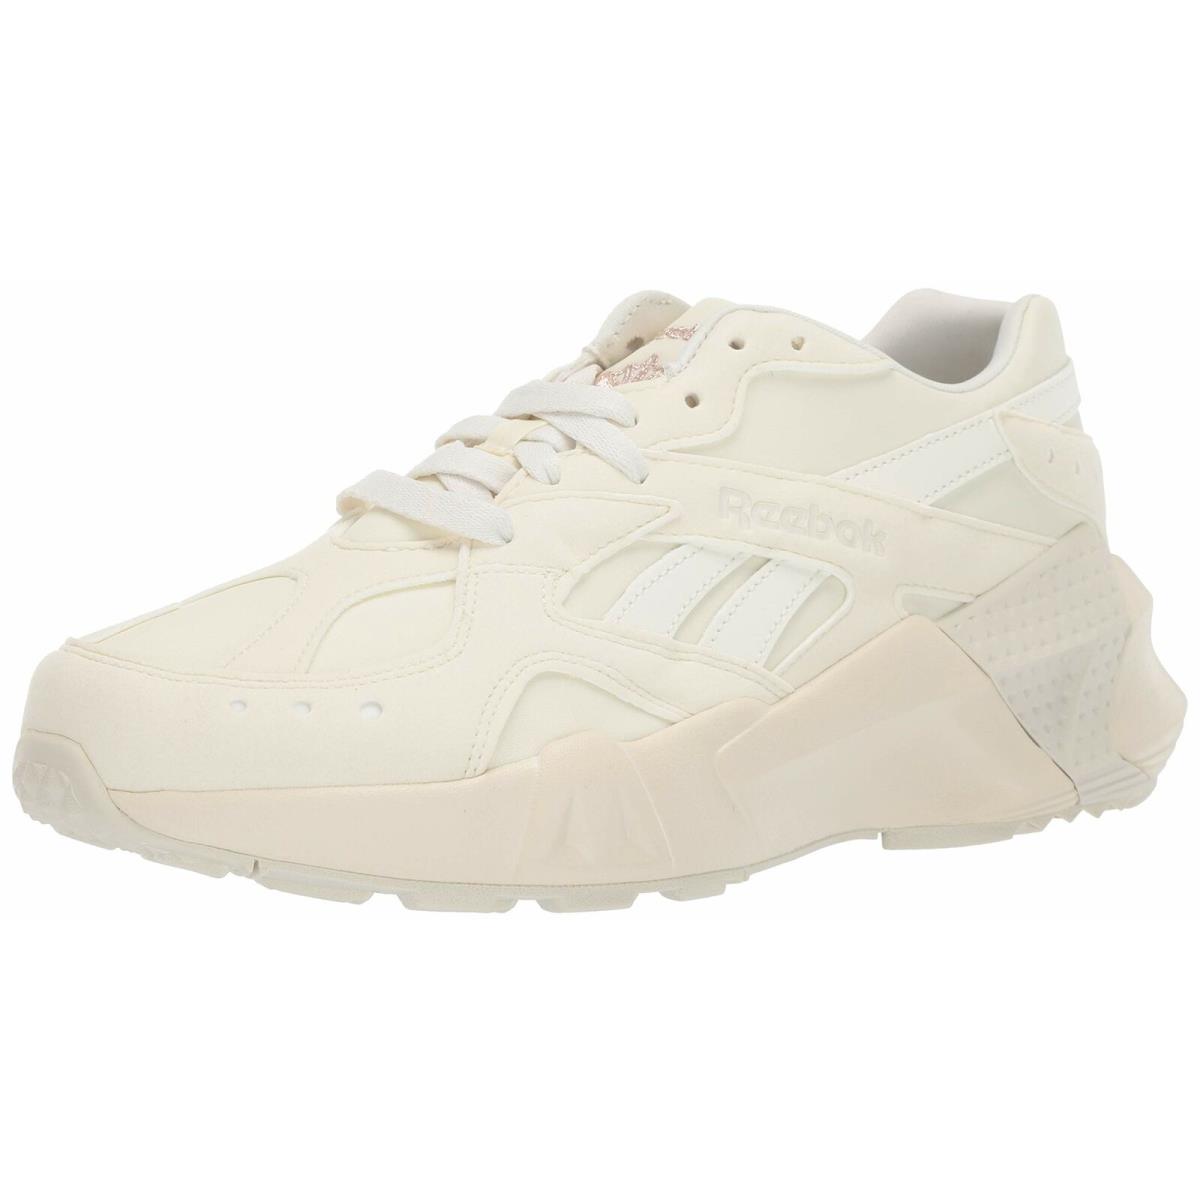 Reebok Unisex Adults Sneaker DV6260 Chalk/ Paper/ White/ Rose Gold Size 10M